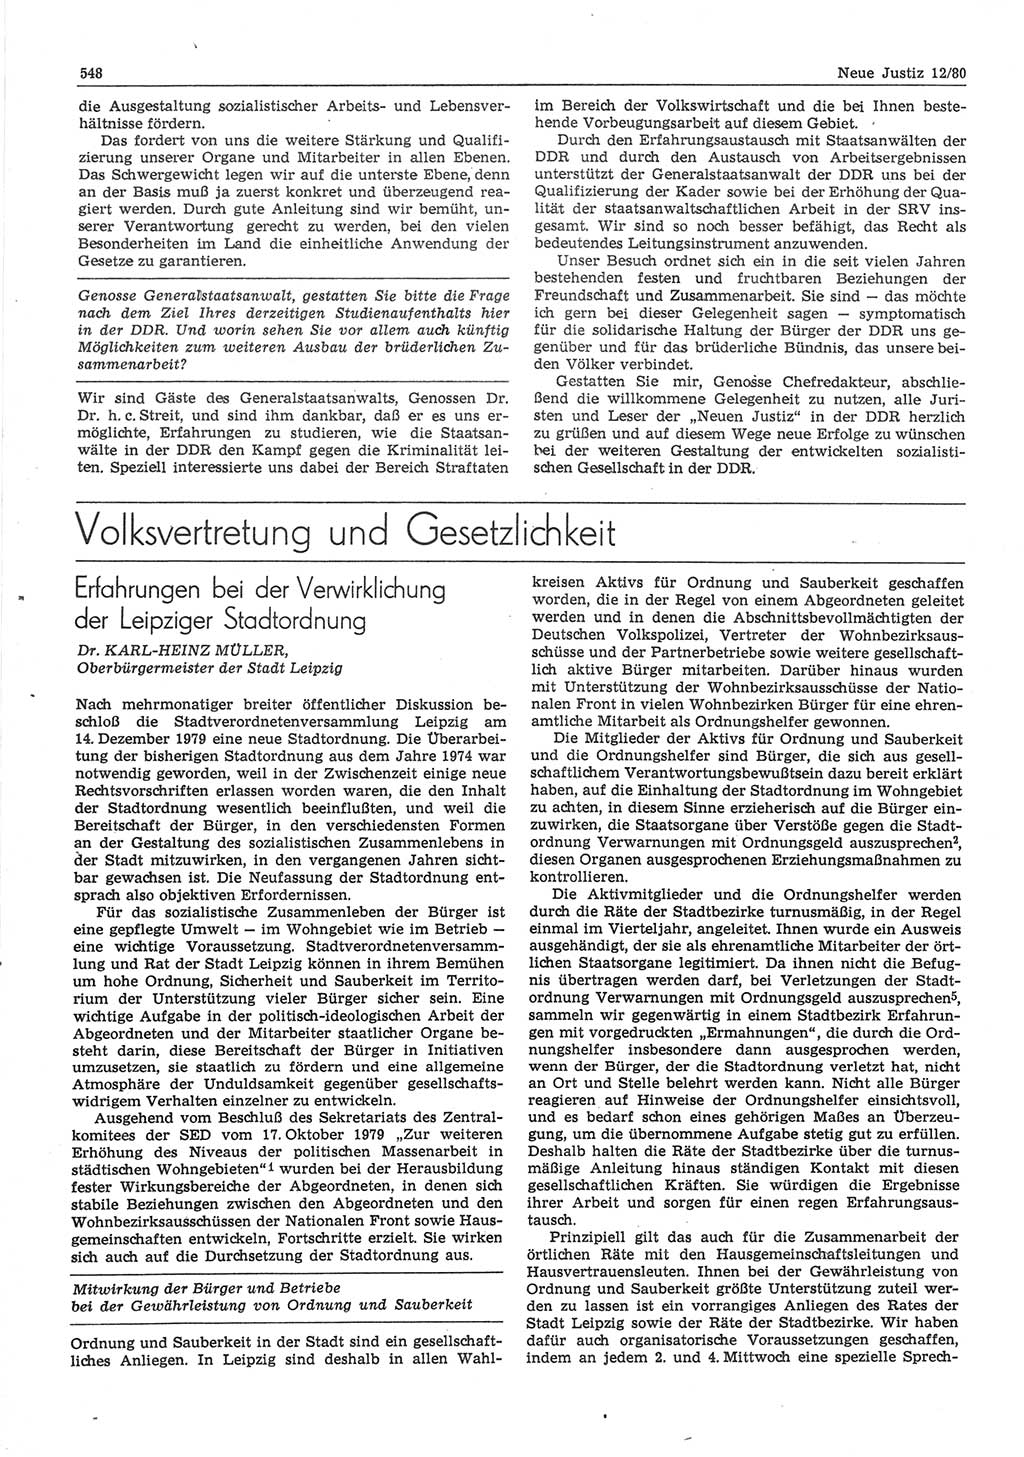 Neue Justiz (NJ), Zeitschrift für sozialistisches Recht und Gesetzlichkeit [Deutsche Demokratische Republik (DDR)], 34. Jahrgang 1980, Seite 548 (NJ DDR 1980, S. 548)